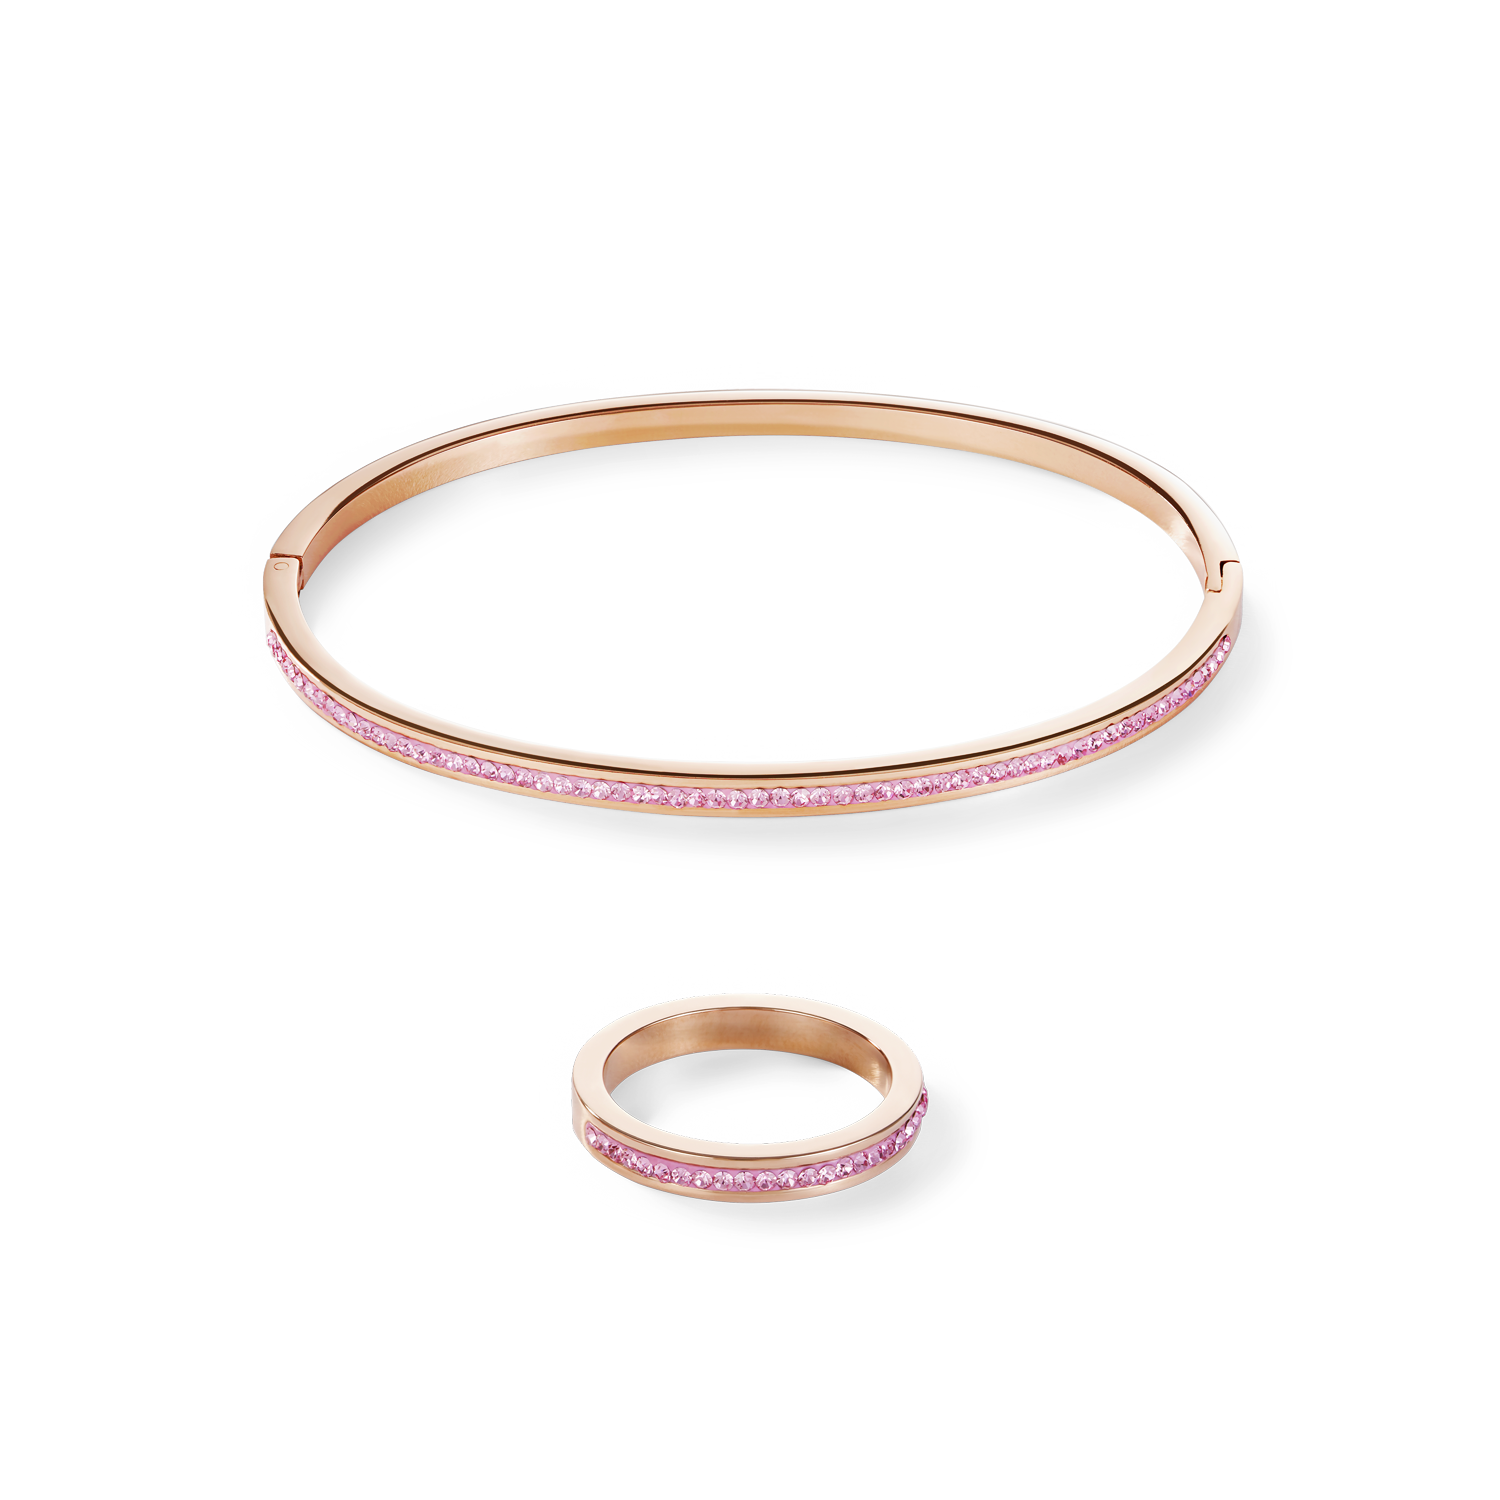 Bracciale sottile acciaio inox oro rosé e cristalli pavé rosa chiaro